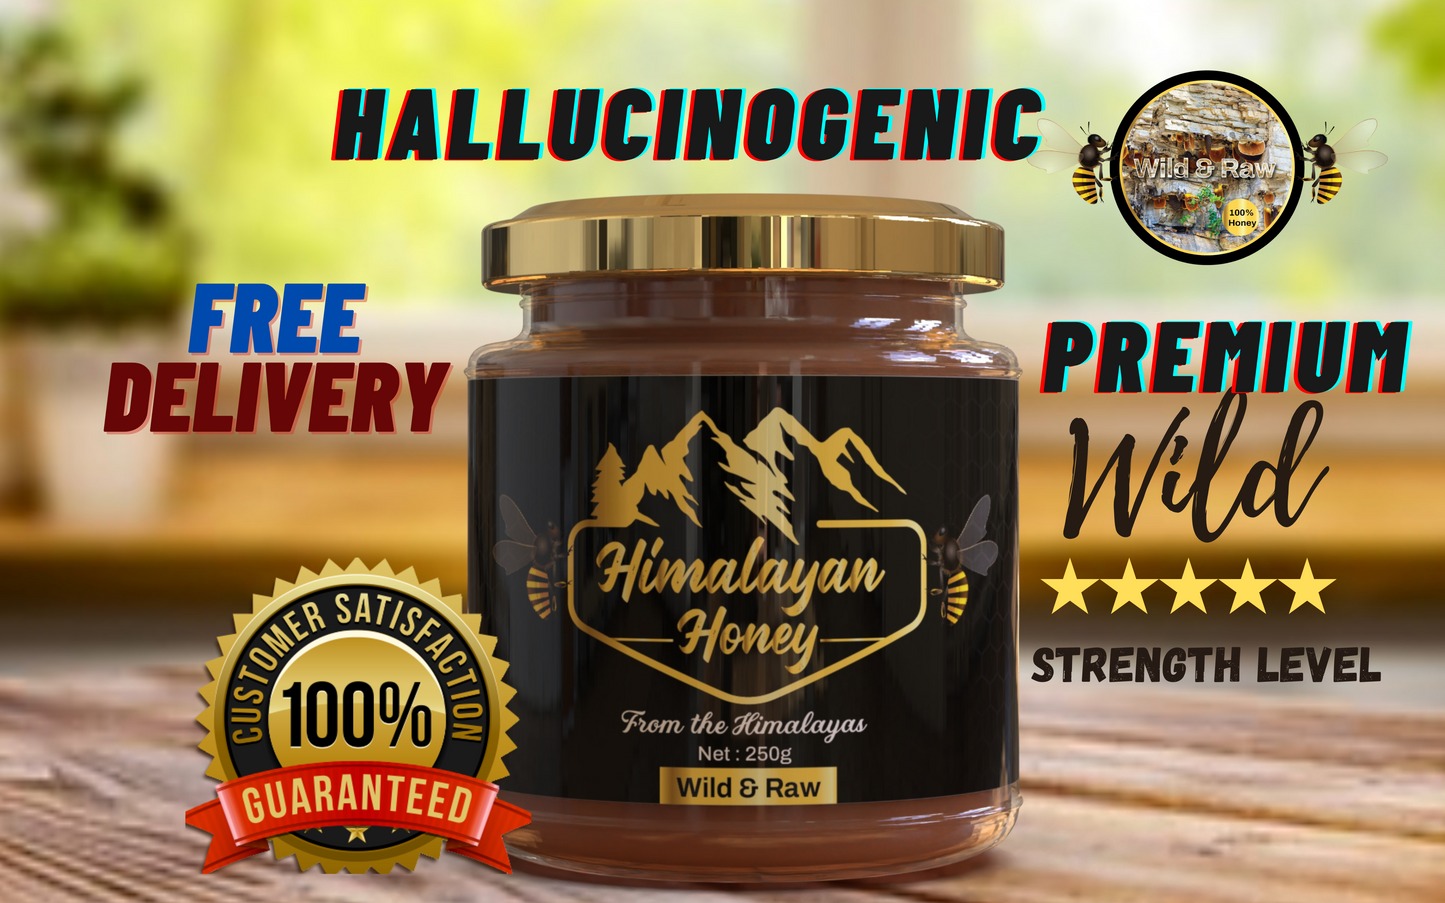 Mad Honey Himalayan premium 250g Platinum range Nepal